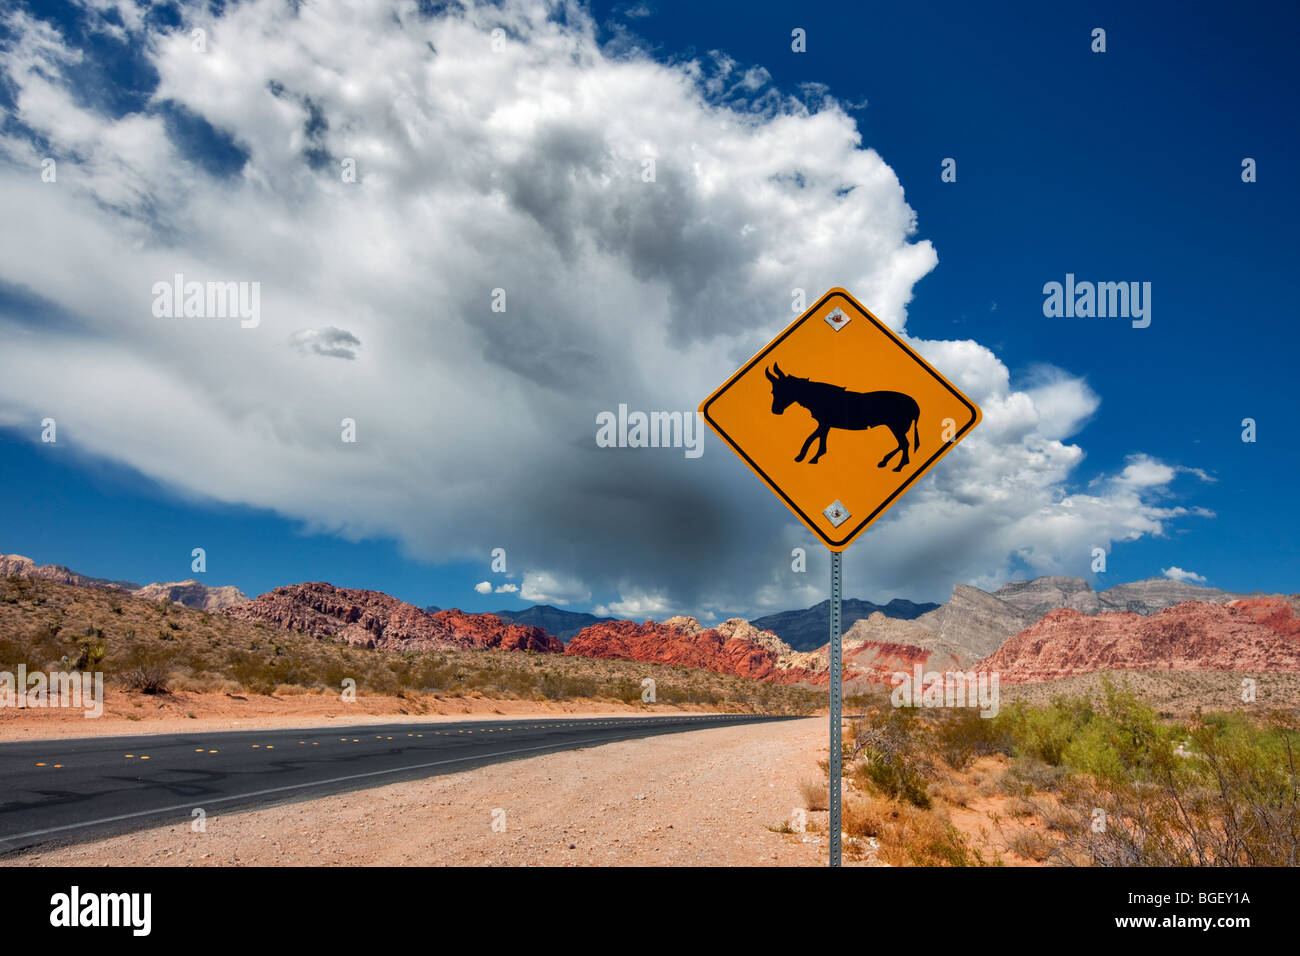 Road, mule signe, nuages d'orage et de formations rocheuses dans le Red Rock Canyon National Conservation Area, Nevada Banque D'Images